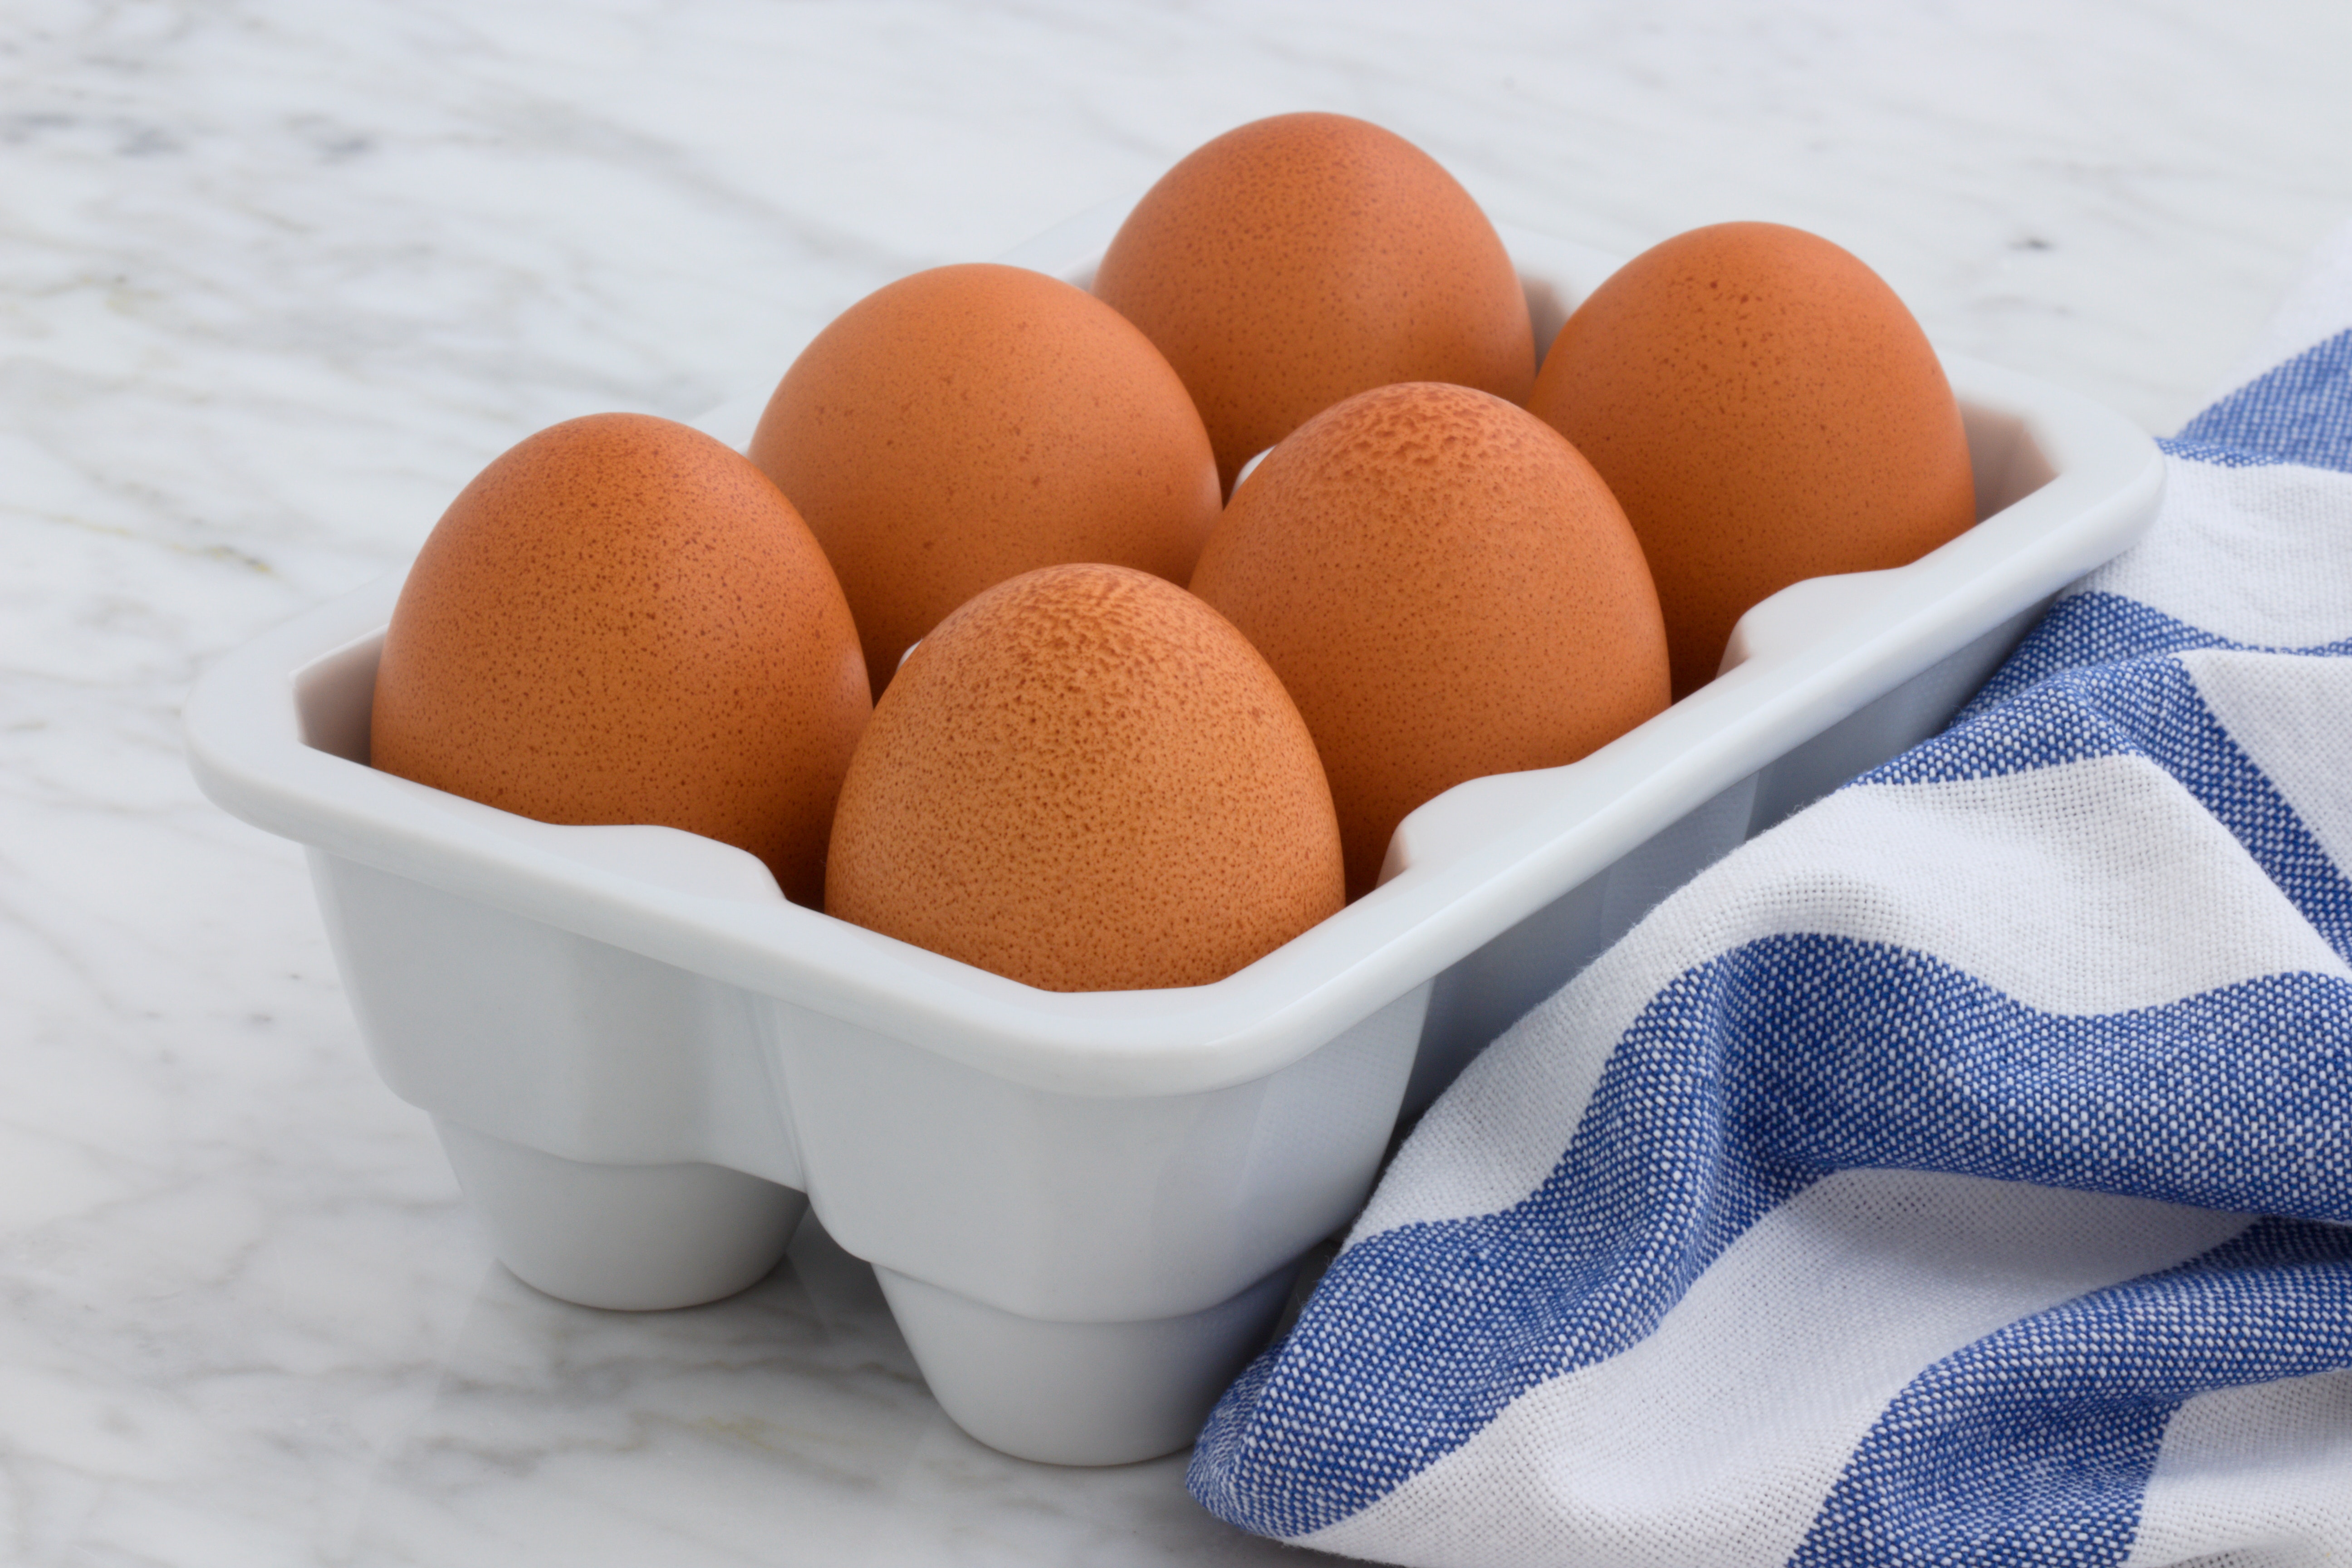 Los huevos deben guardarse en un envase con tapa en la heladera y lavarse solo un poco en el momento de consumir (Pexels)